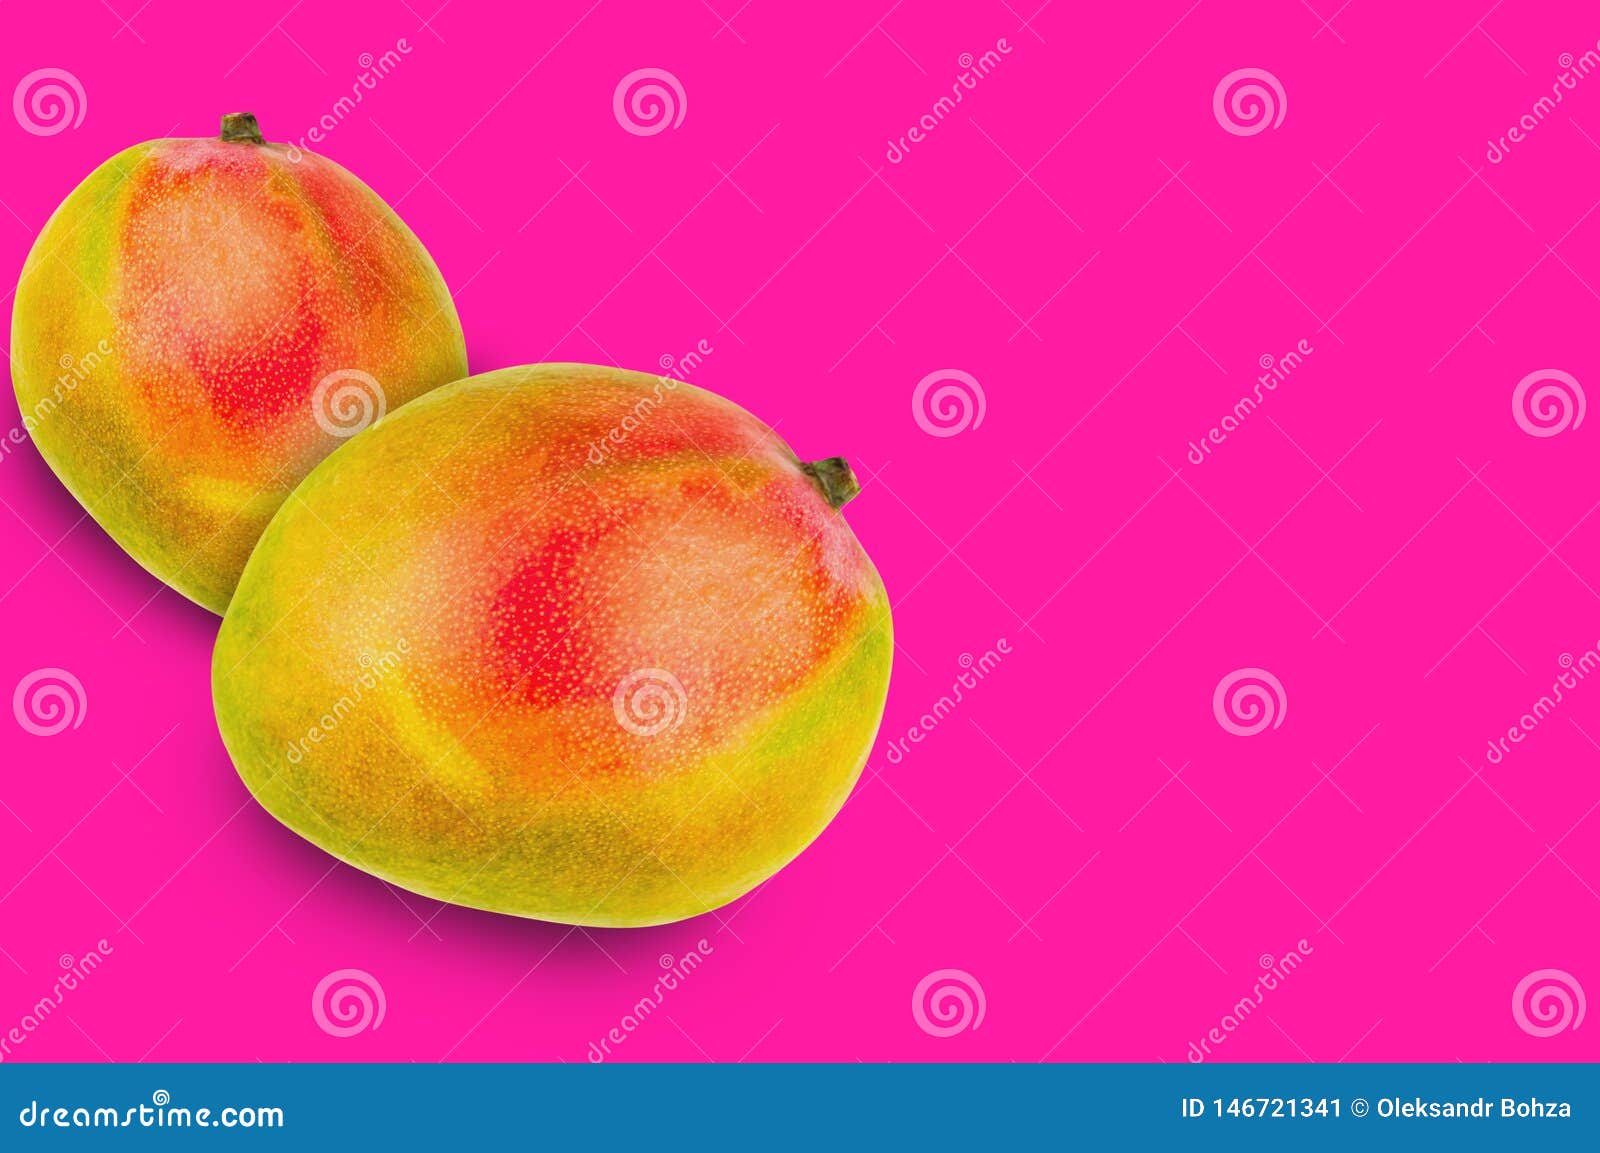 Peach mango juice 777